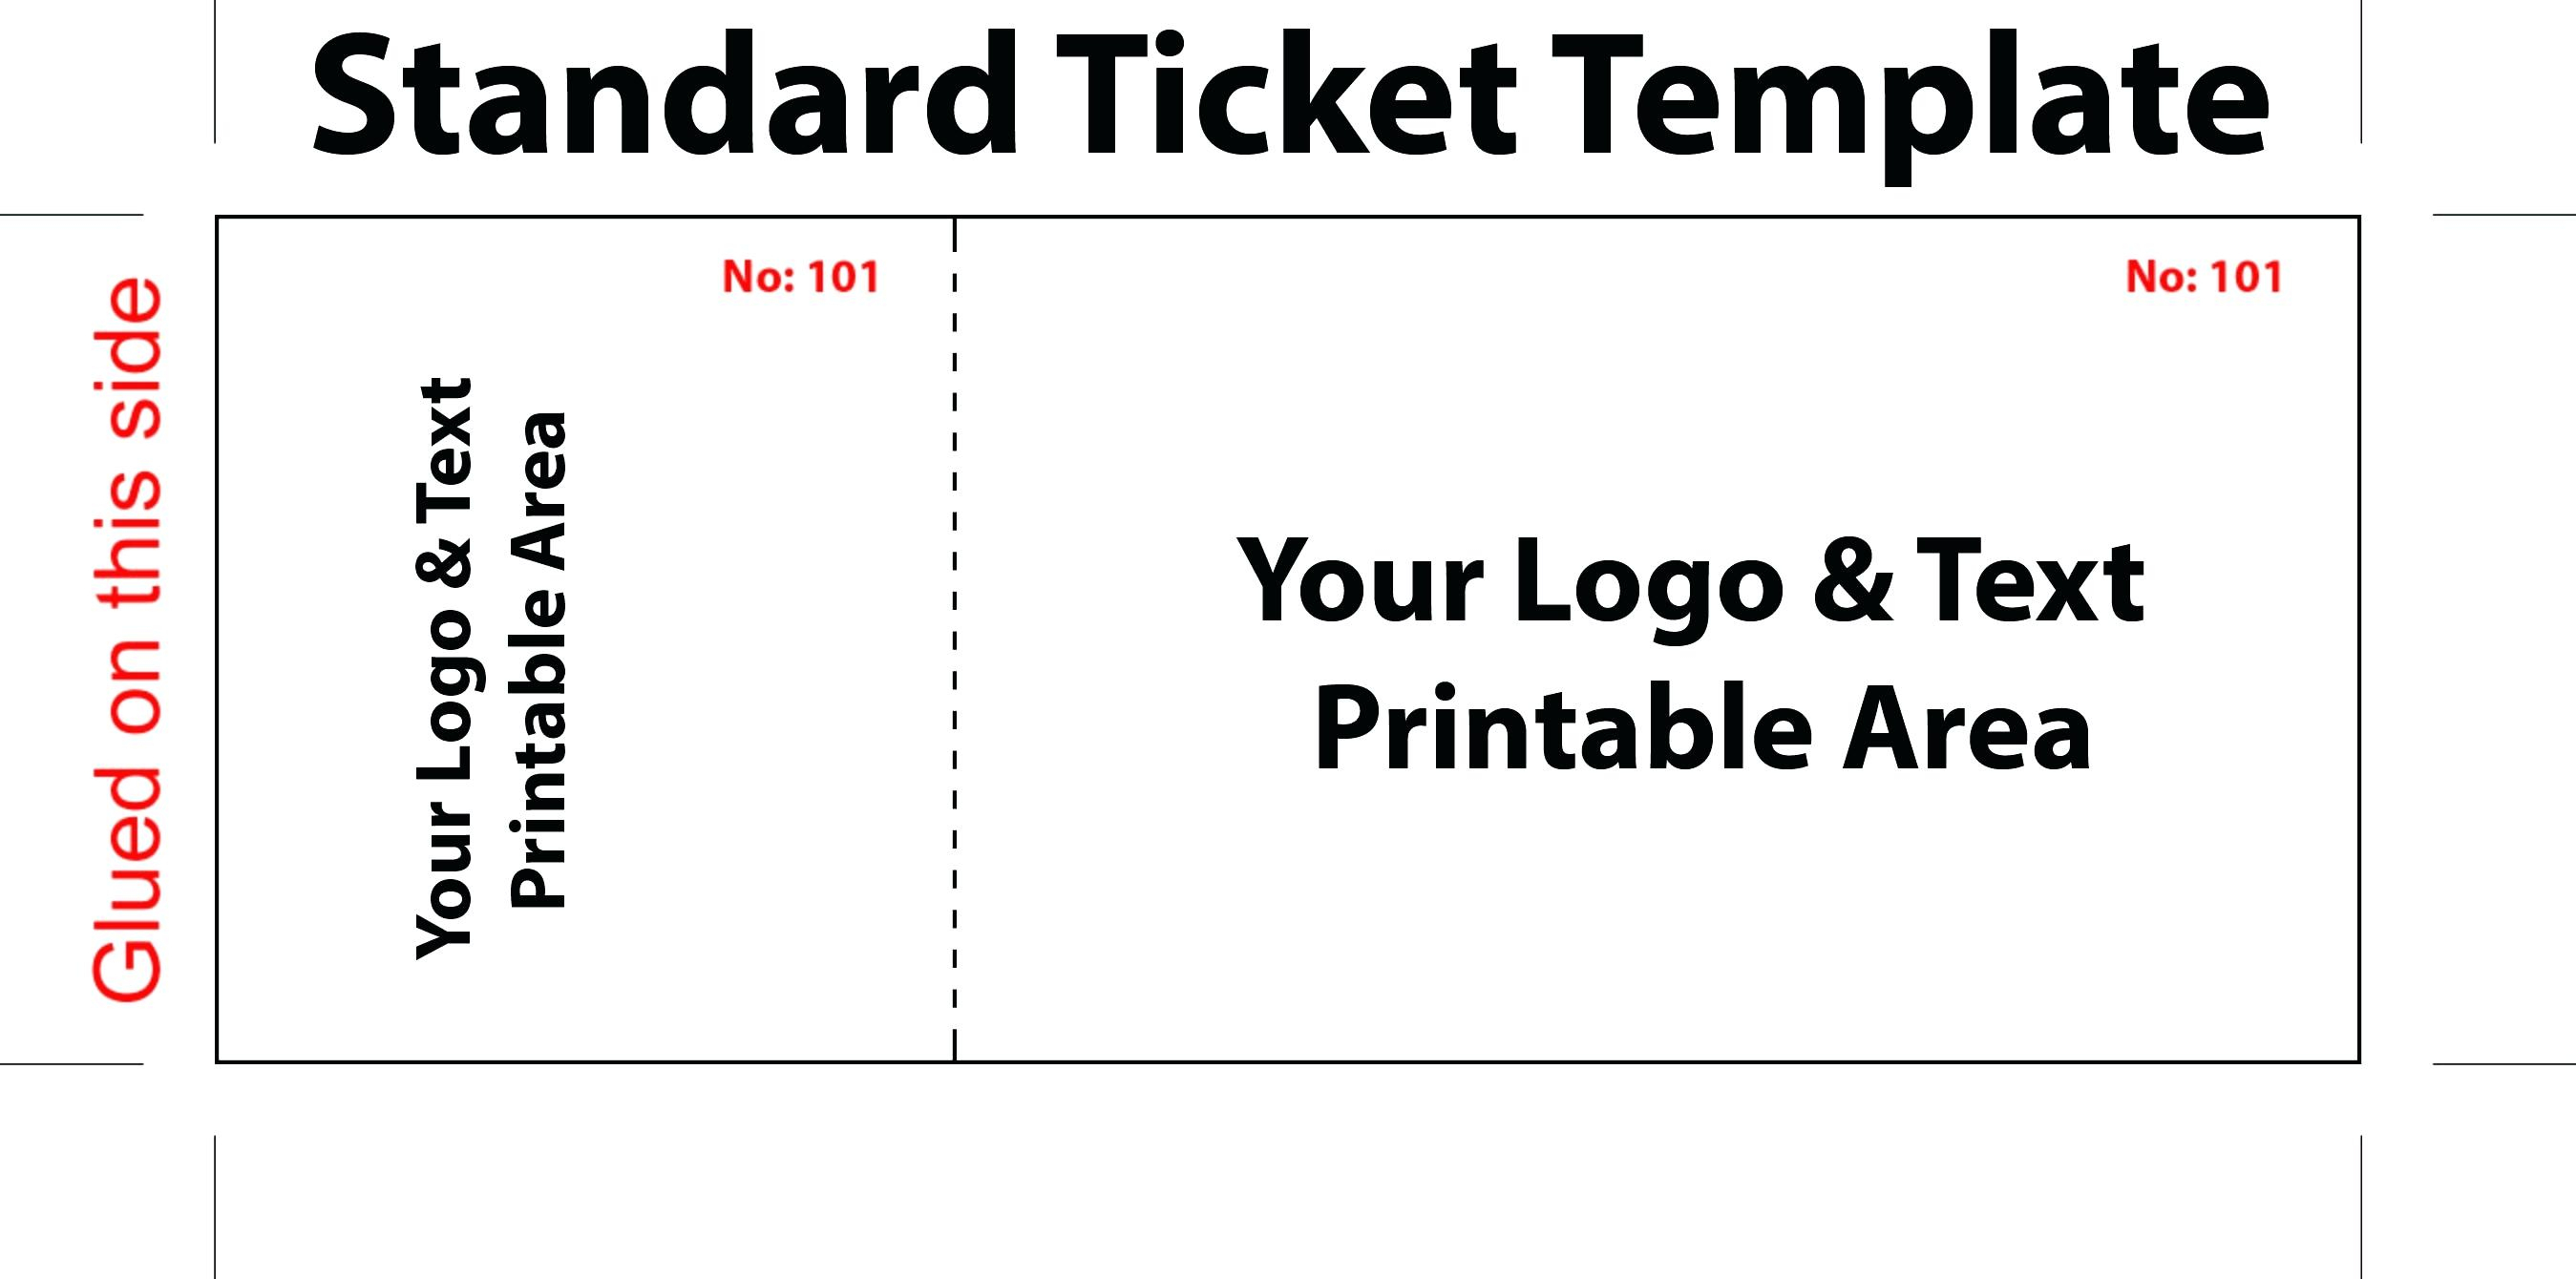 020 Template Ideas Free Printable Raffle Tickets Ticket For Word New - Free Printable Raffle Tickets With Stubs